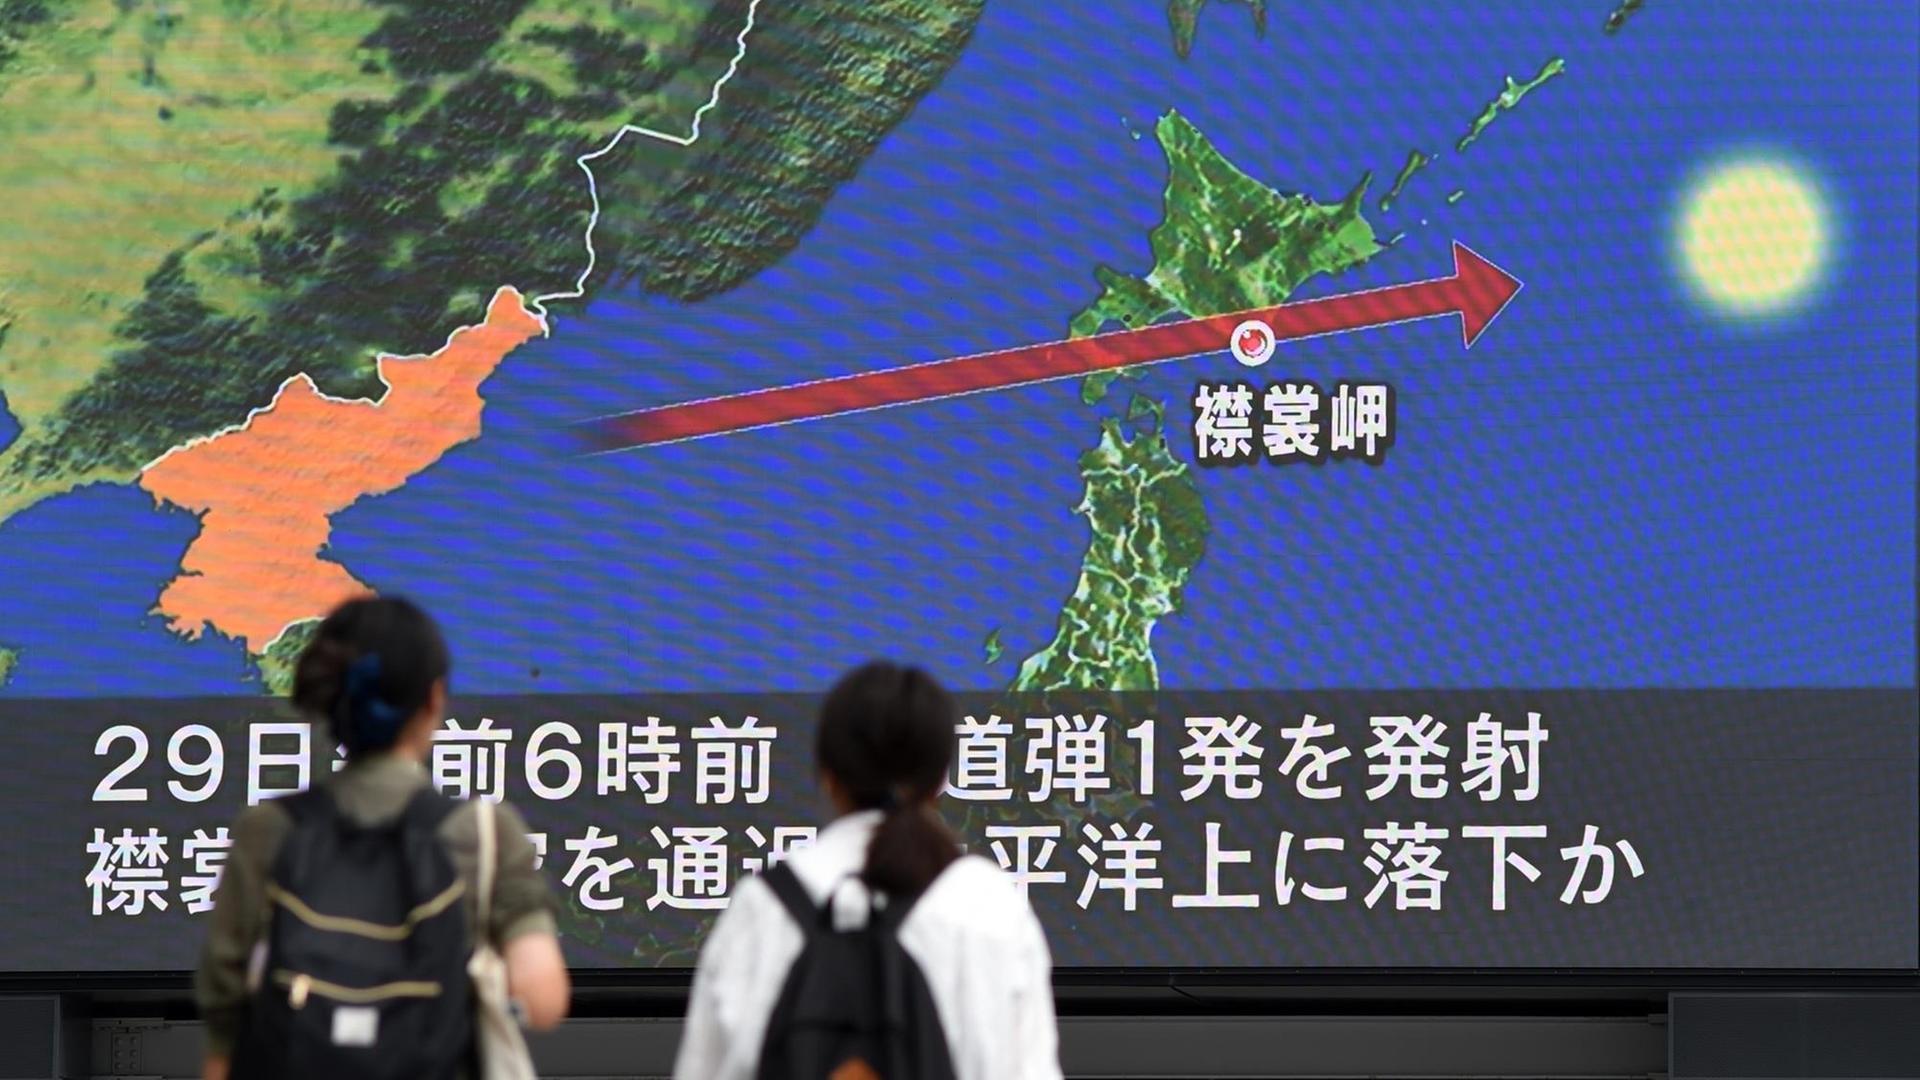 Zwei Personen in Japan verfolgen die Berichterstattung über den nordkoreanischen Raketen auf einem Monitor.